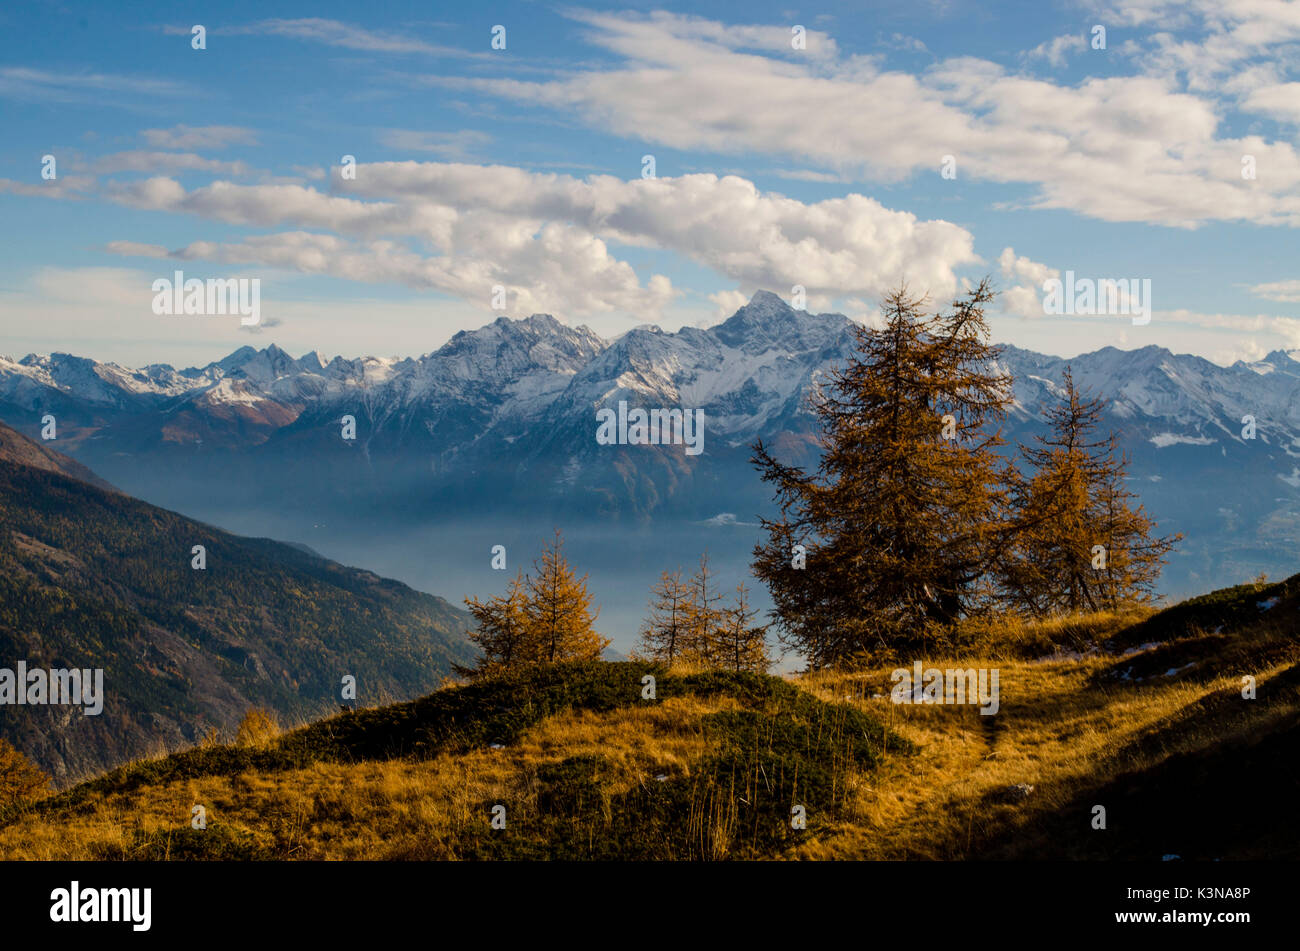 Valle del Gran San Bernardo, Aosta valley, Italy Stock Photo - Alamy